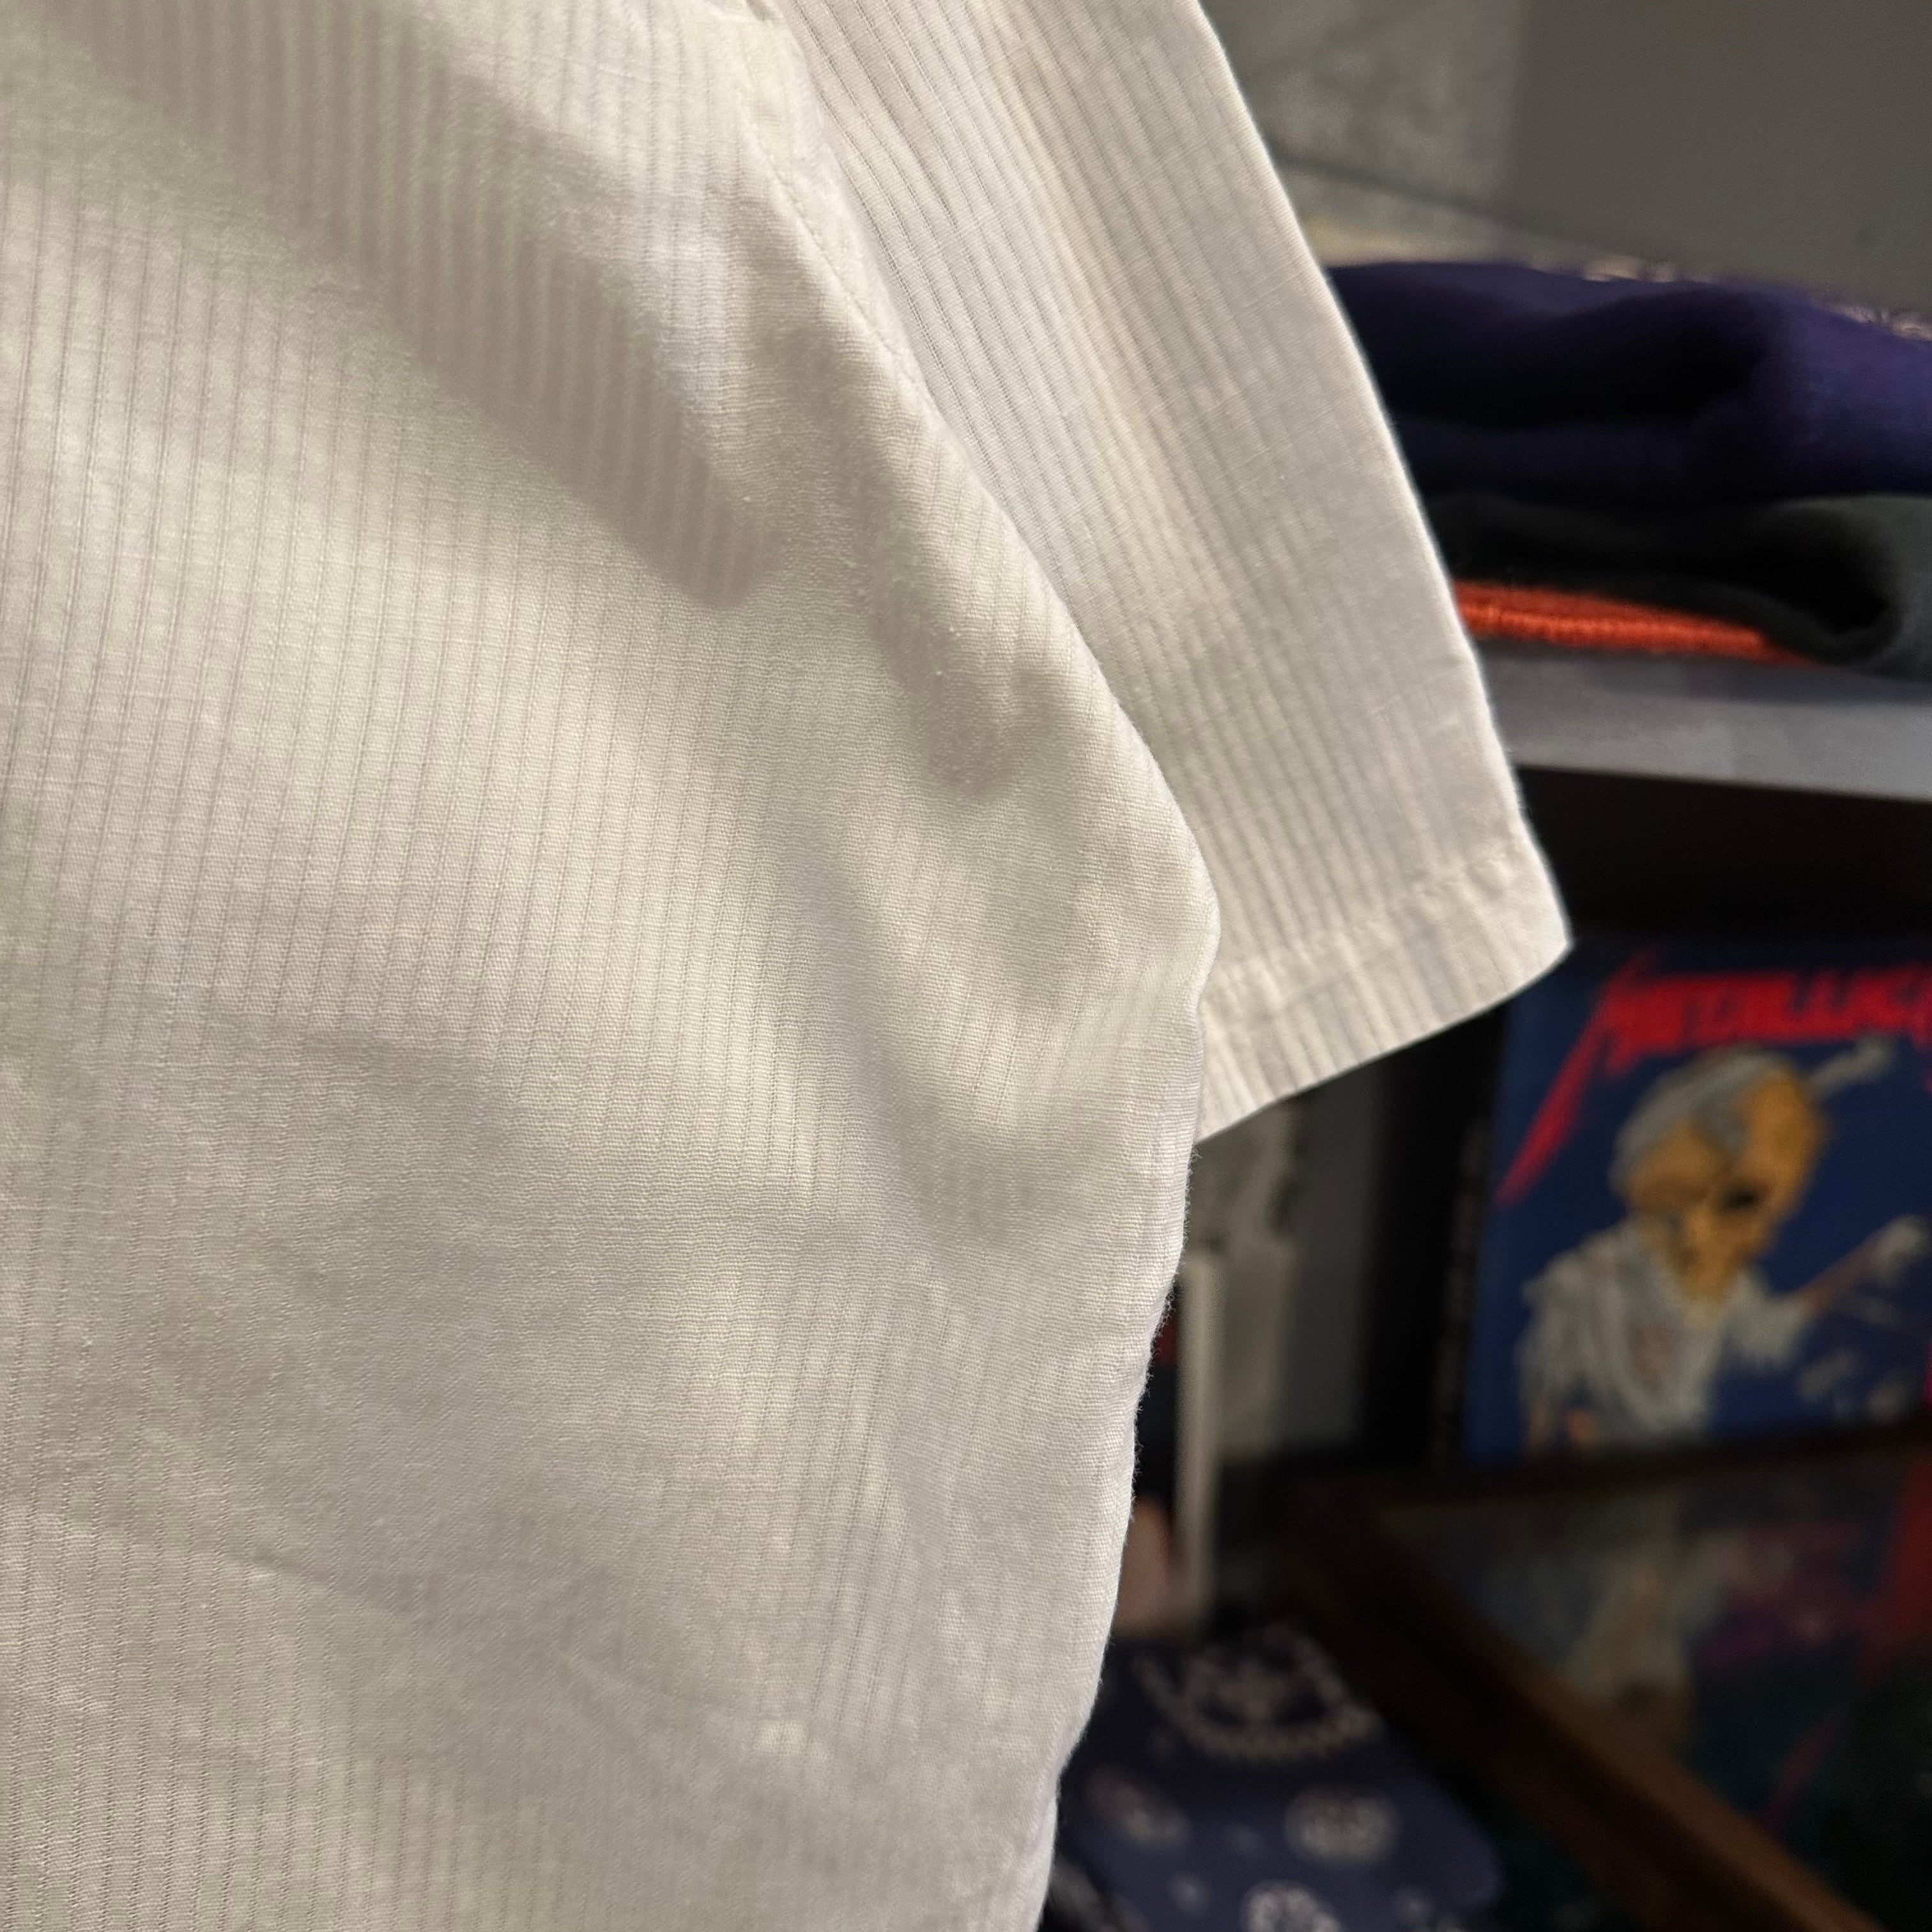 1950s Jayson ヴィンテージ rayon shirts オープンカラー